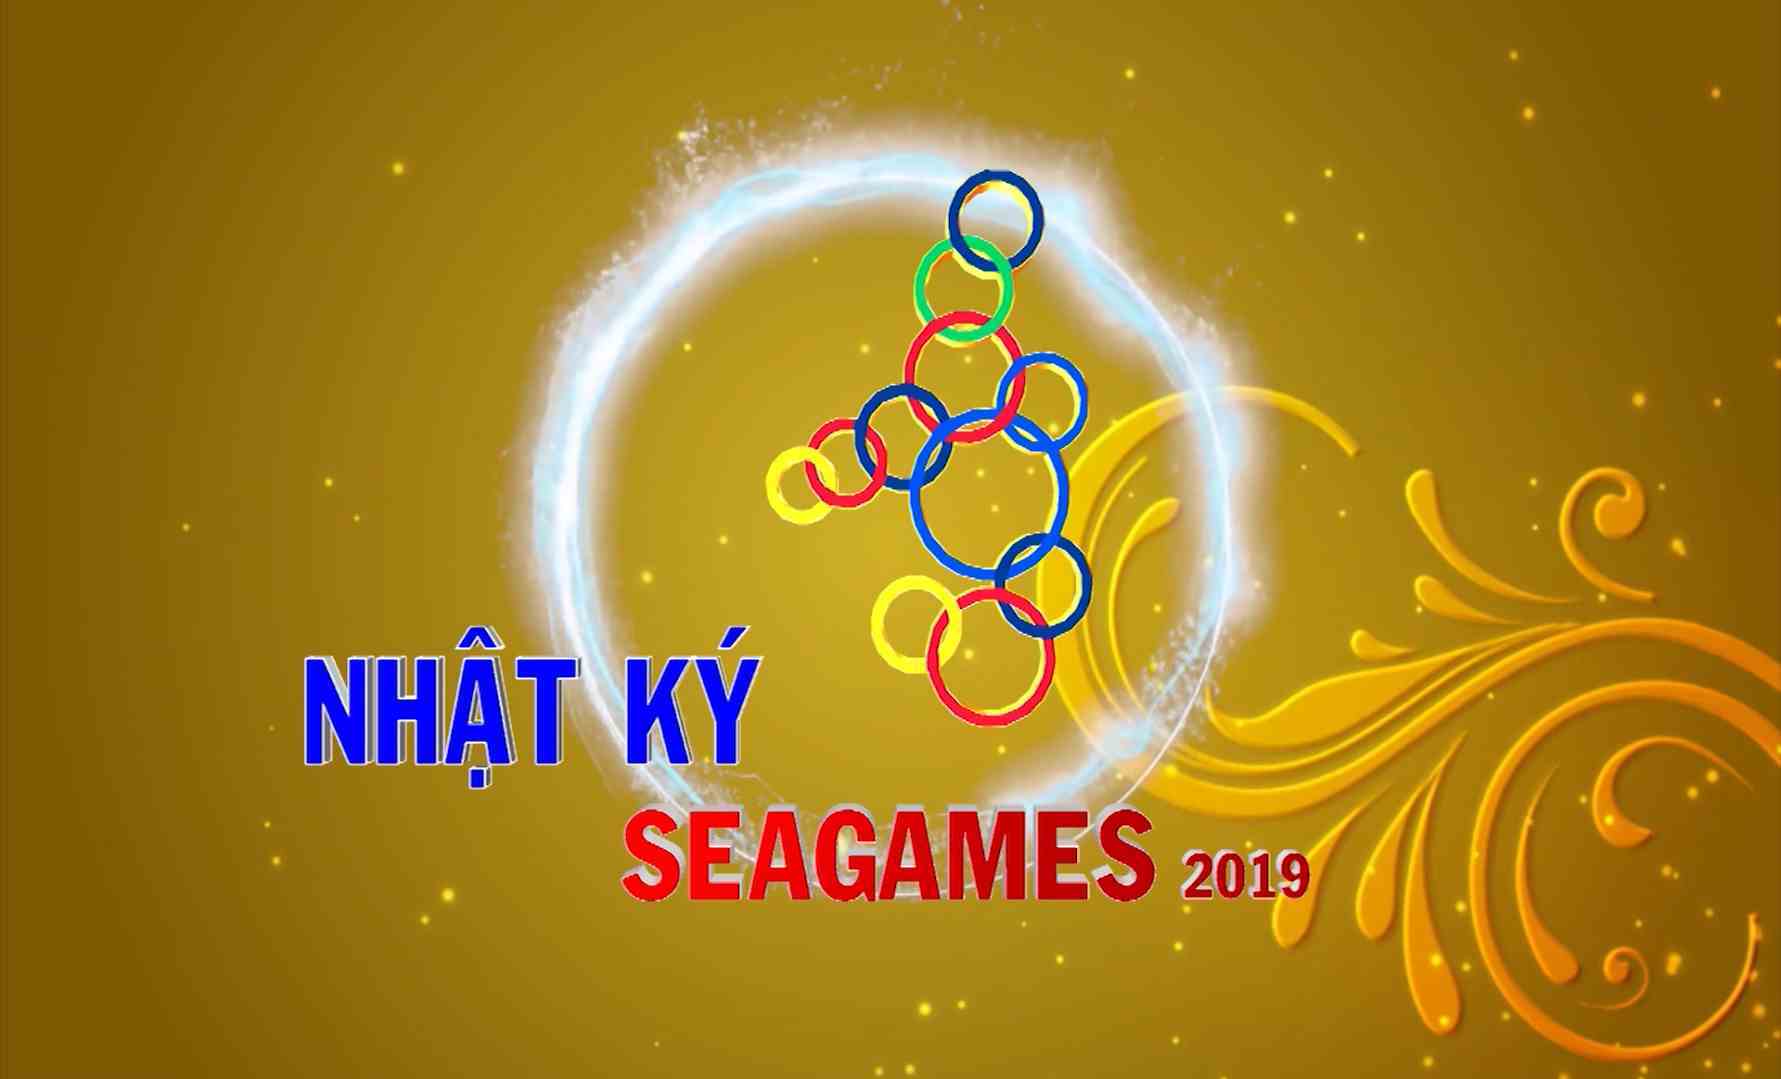 [Video] Nhật ký SEA Games 30 sáng (05-12-2019)